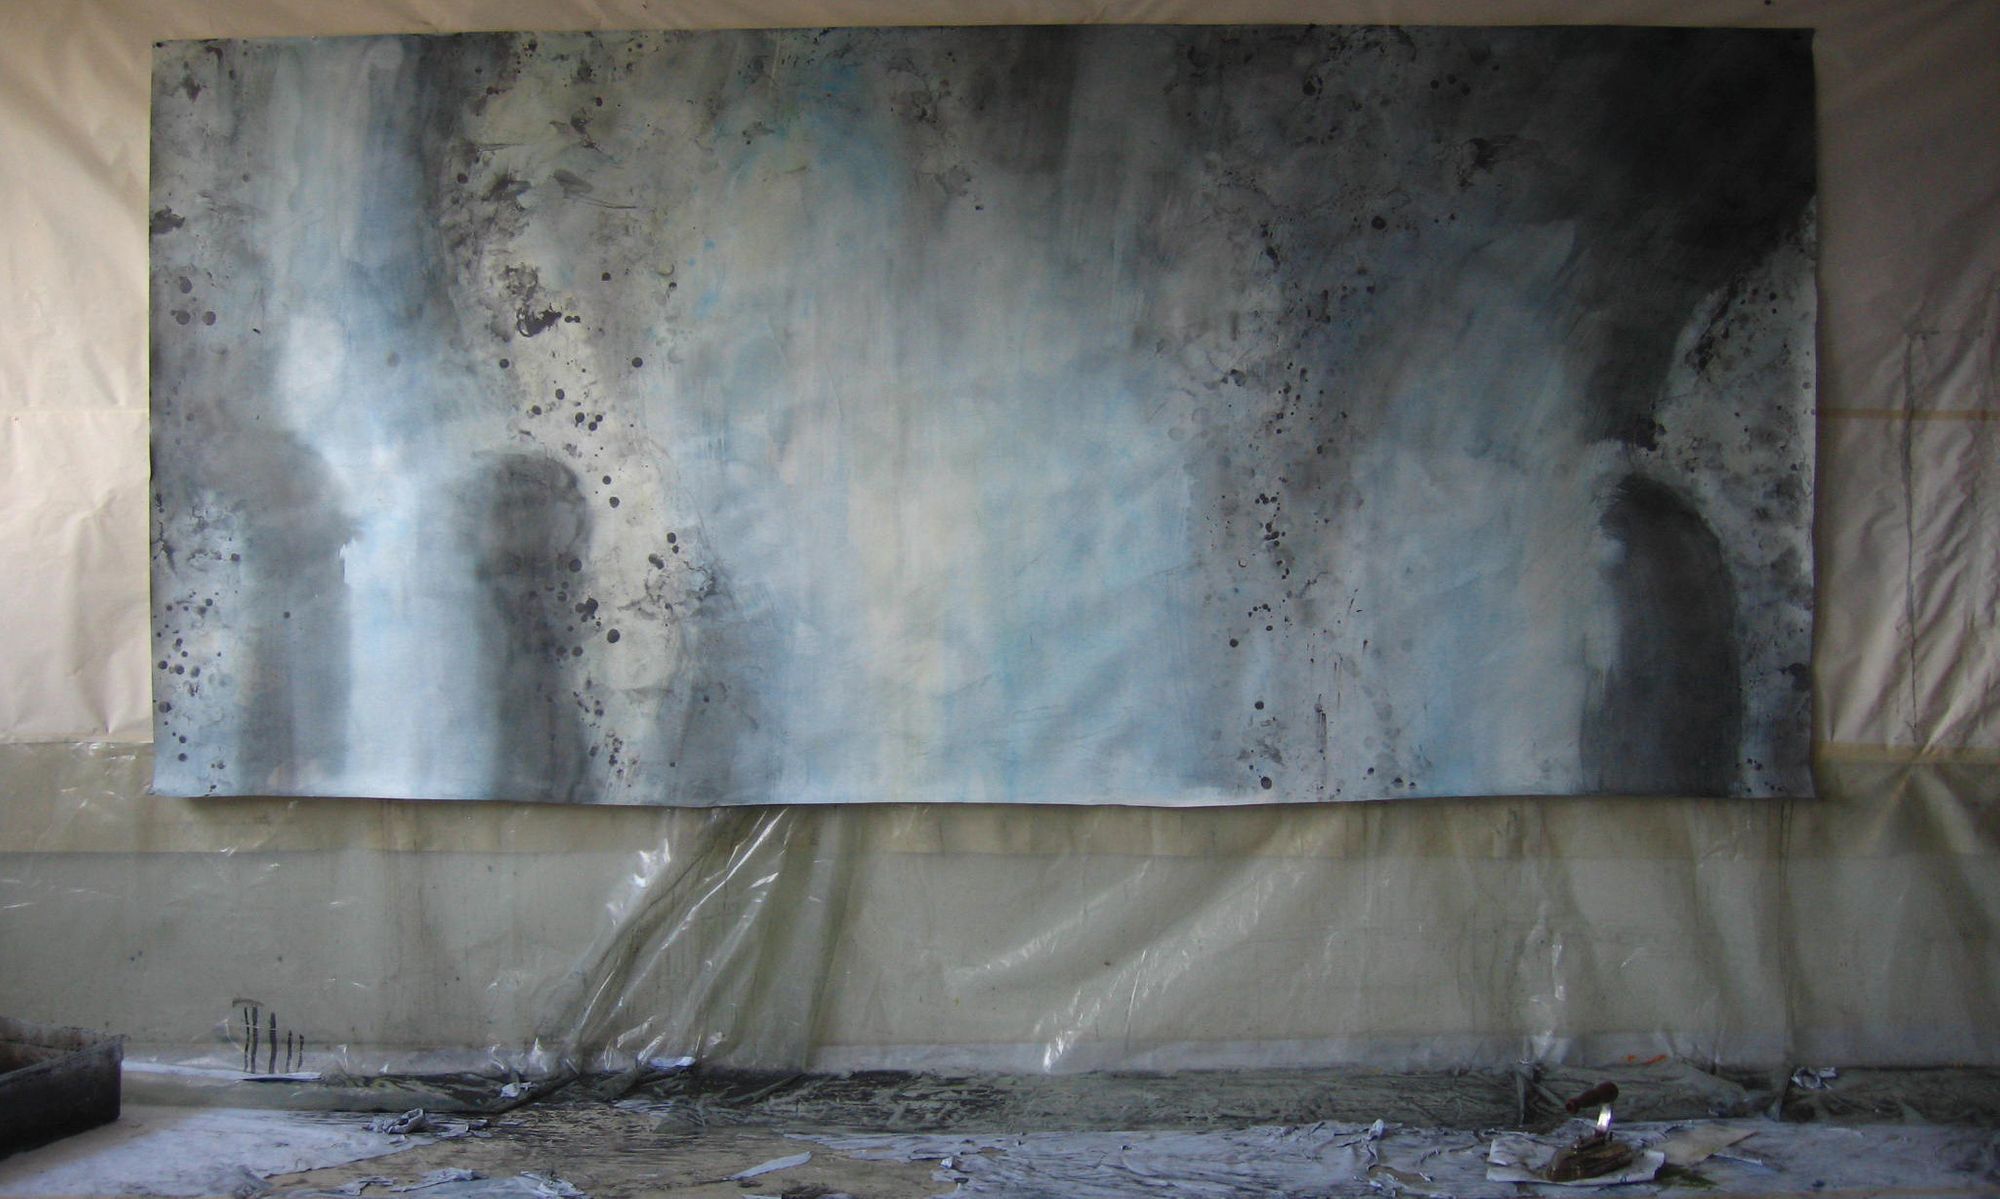 Lit de rivière, 152 x 360cm, 2009